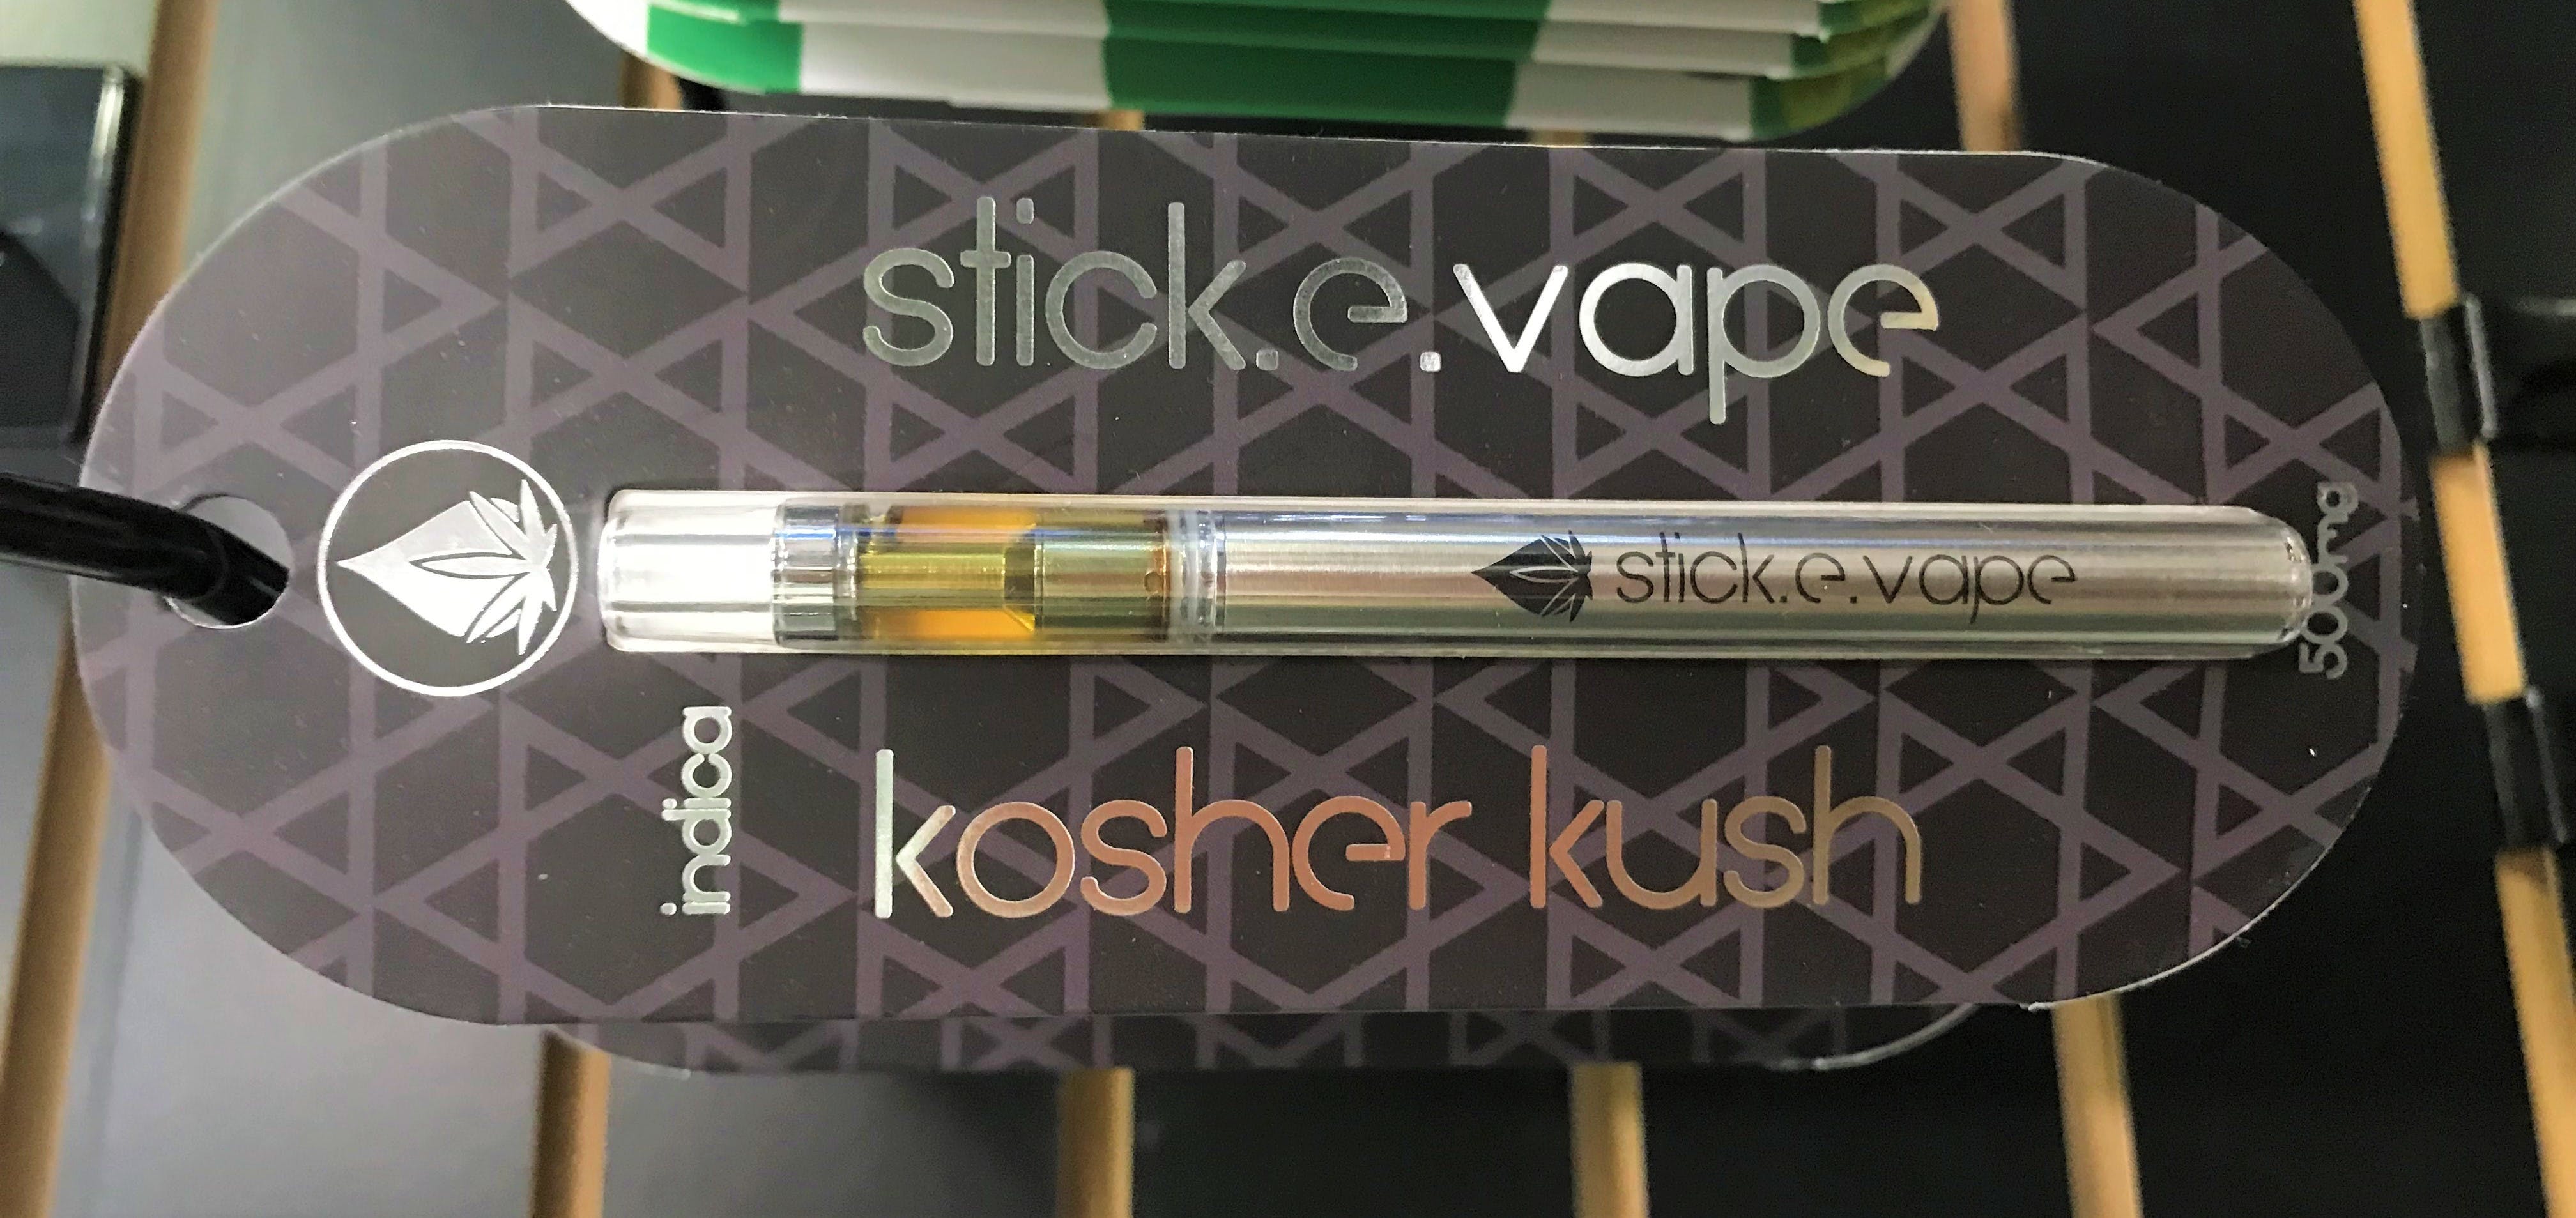 concentrate-stick-e-vape-kosher-kush-500mg-disposable